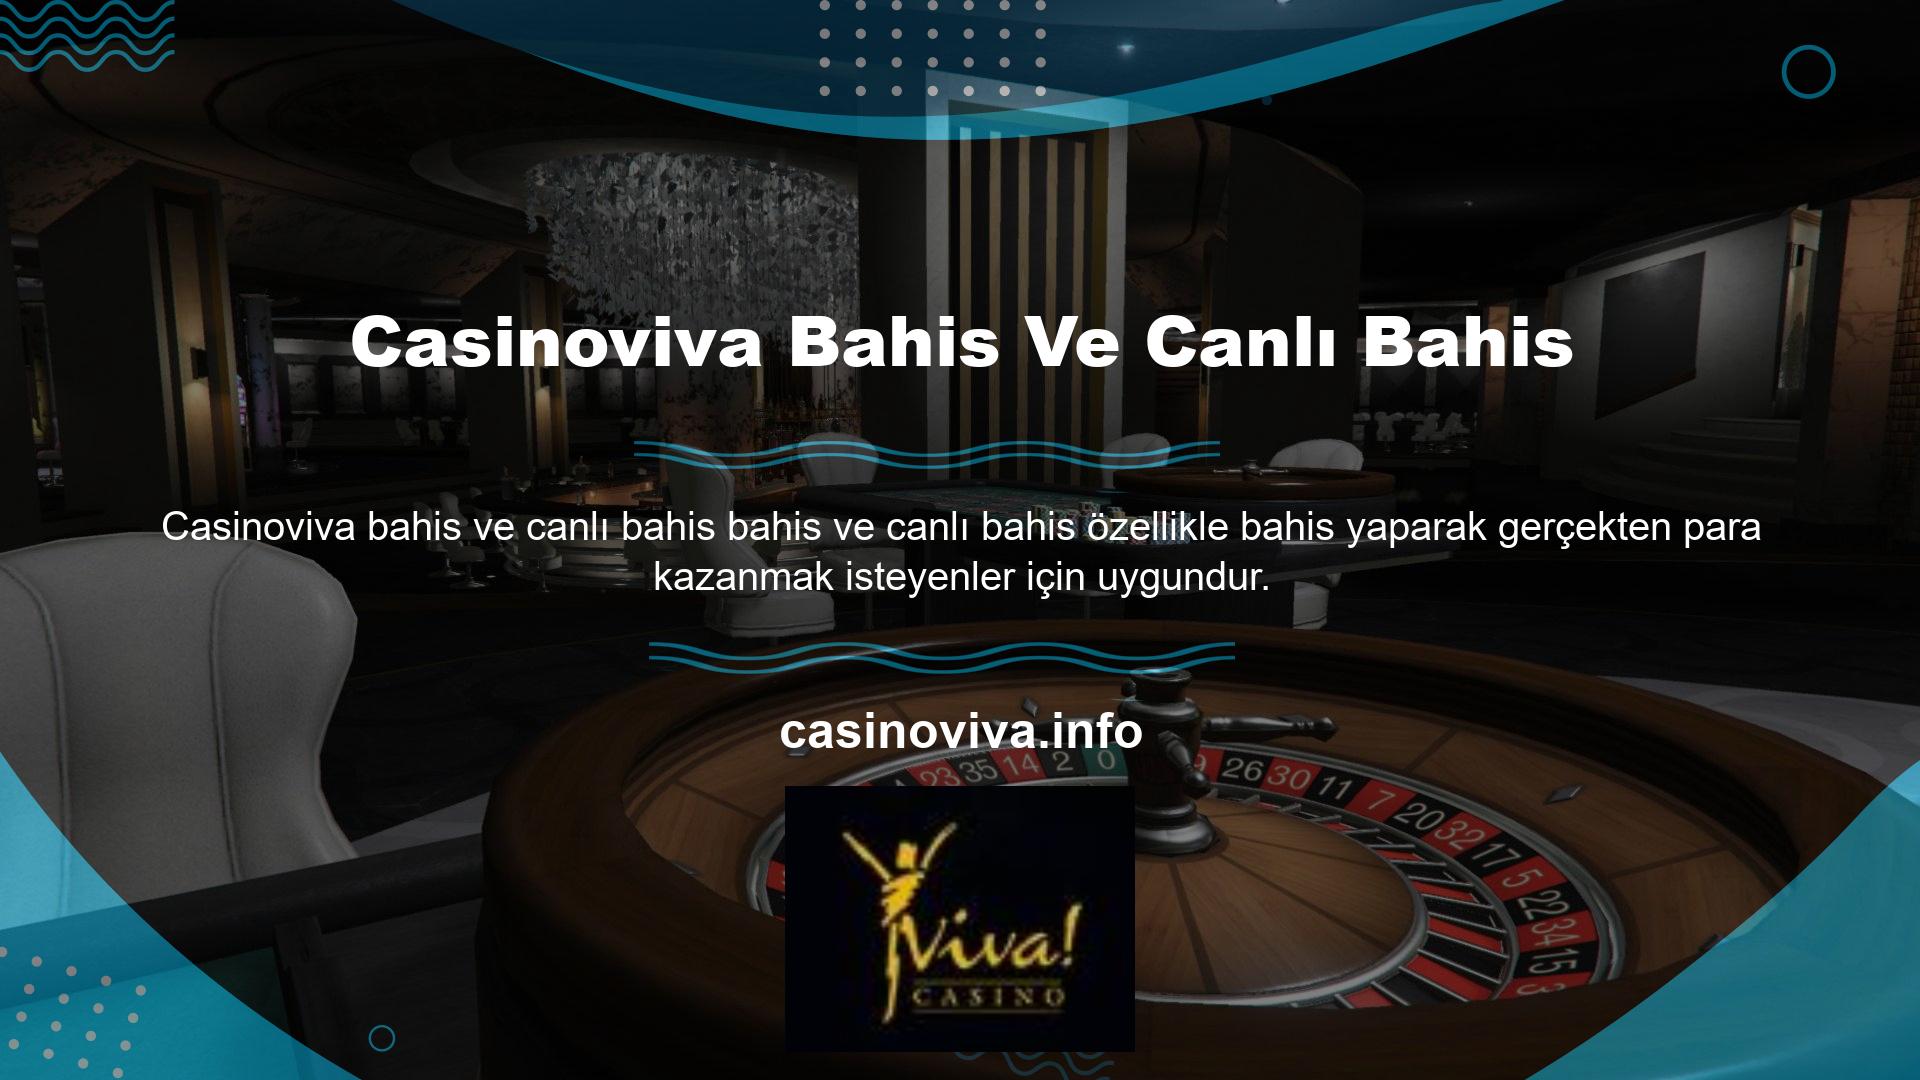 Her kullanıcı, Casinoviva sitede güvenli bir şekilde yaptığı güncel giriş işlemlerine dayalı bahislerden yararlanabilir